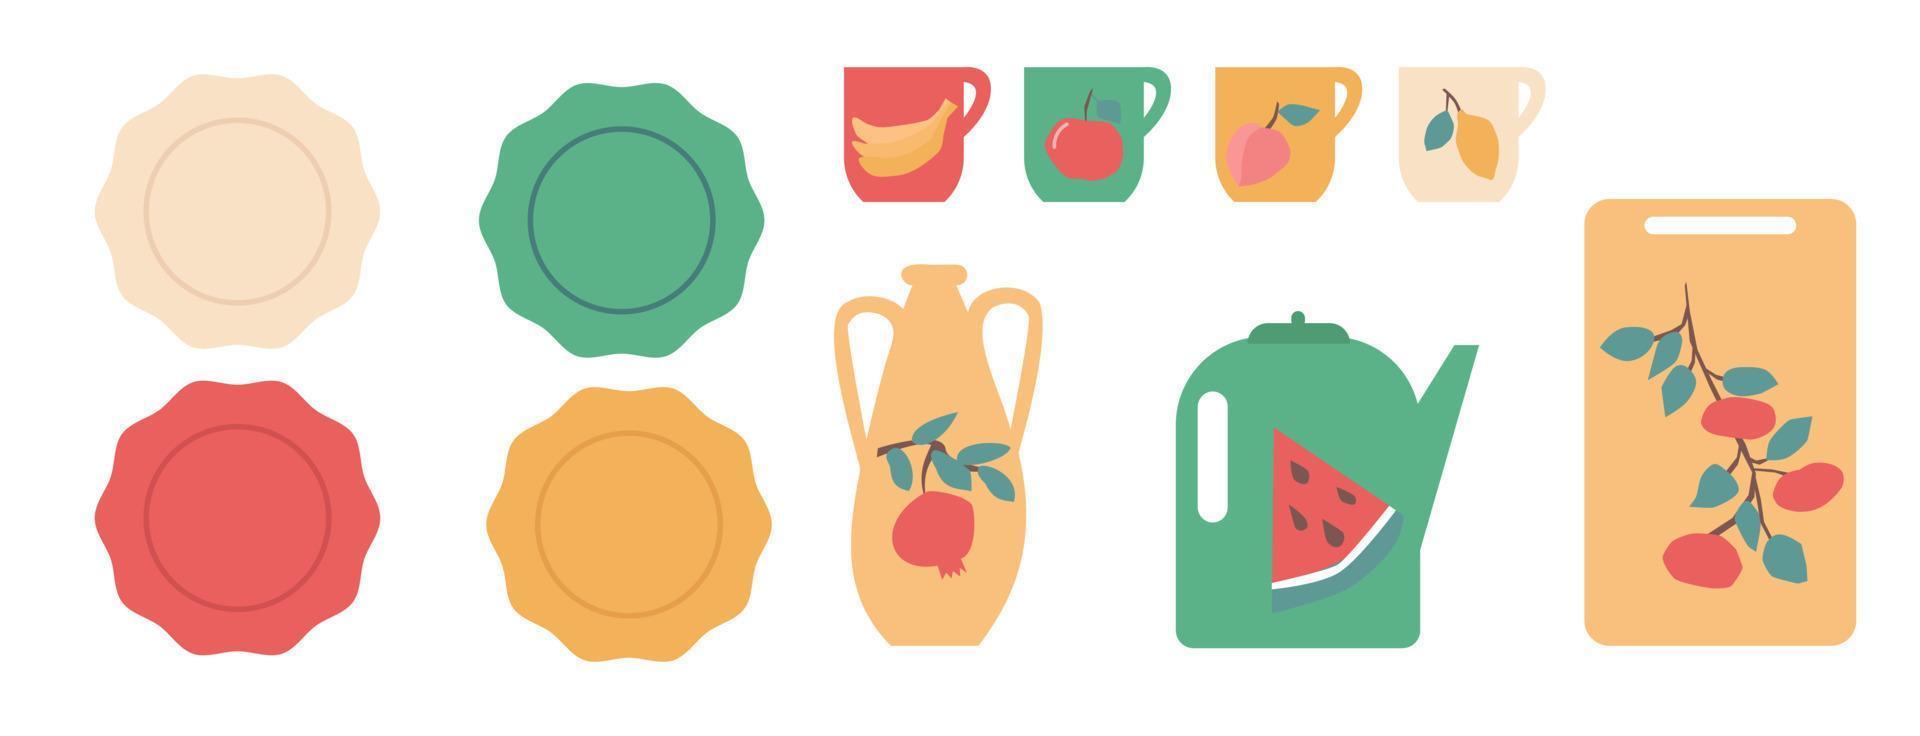 kleurrijke keuken ware versierd met fruites instellen vectorillustratie. vector